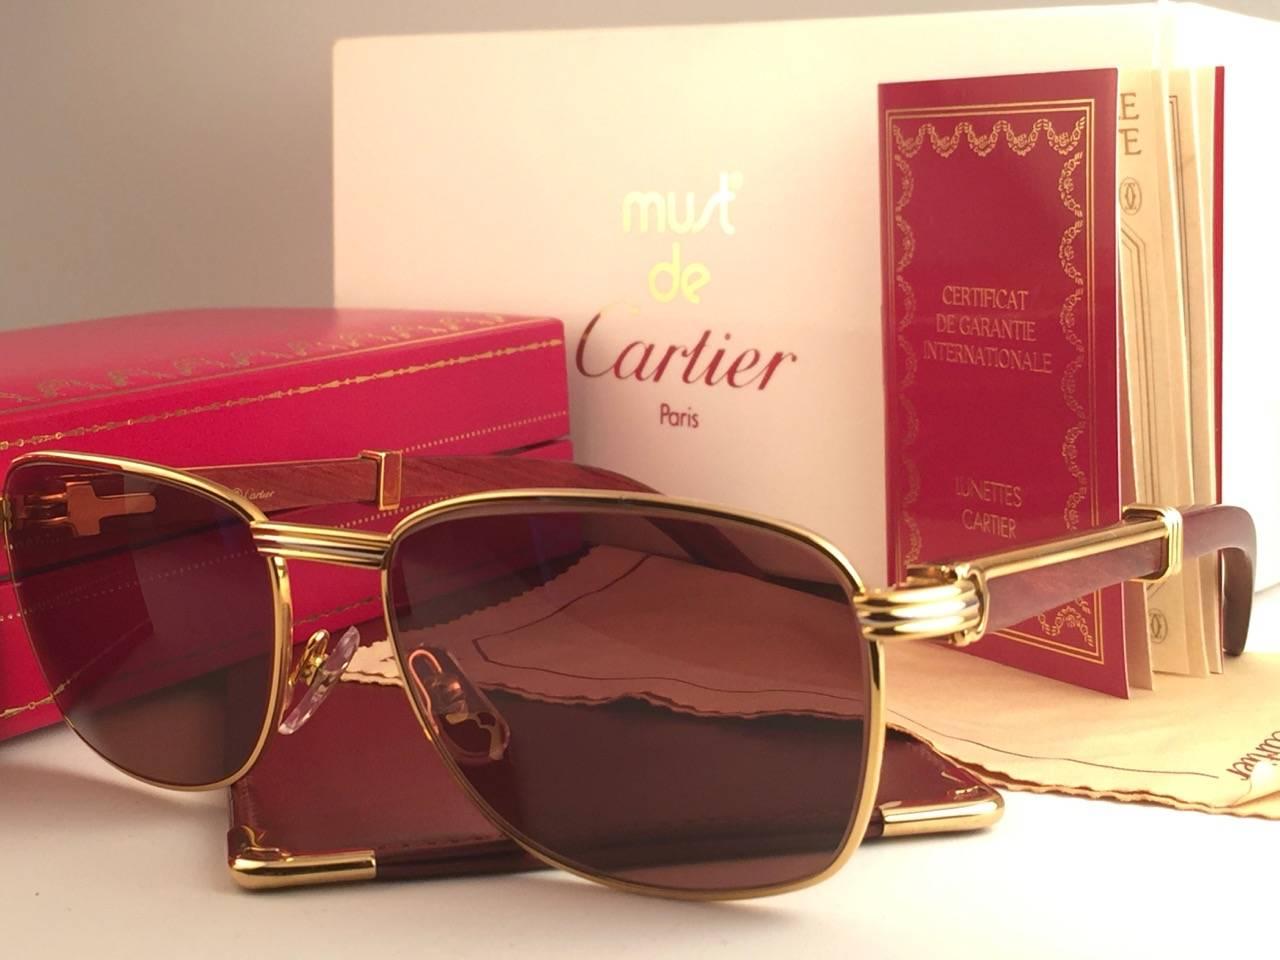 Nouveau 1990 Cartier Full Set Amboise Bubinga Hardwood Sunglasses avec de nouvelles lentilles solides brun miel (protection contre les UV). 
La monture est composée d'une face et de côtés en or jaune et blanc et possède les célèbres branches en bois